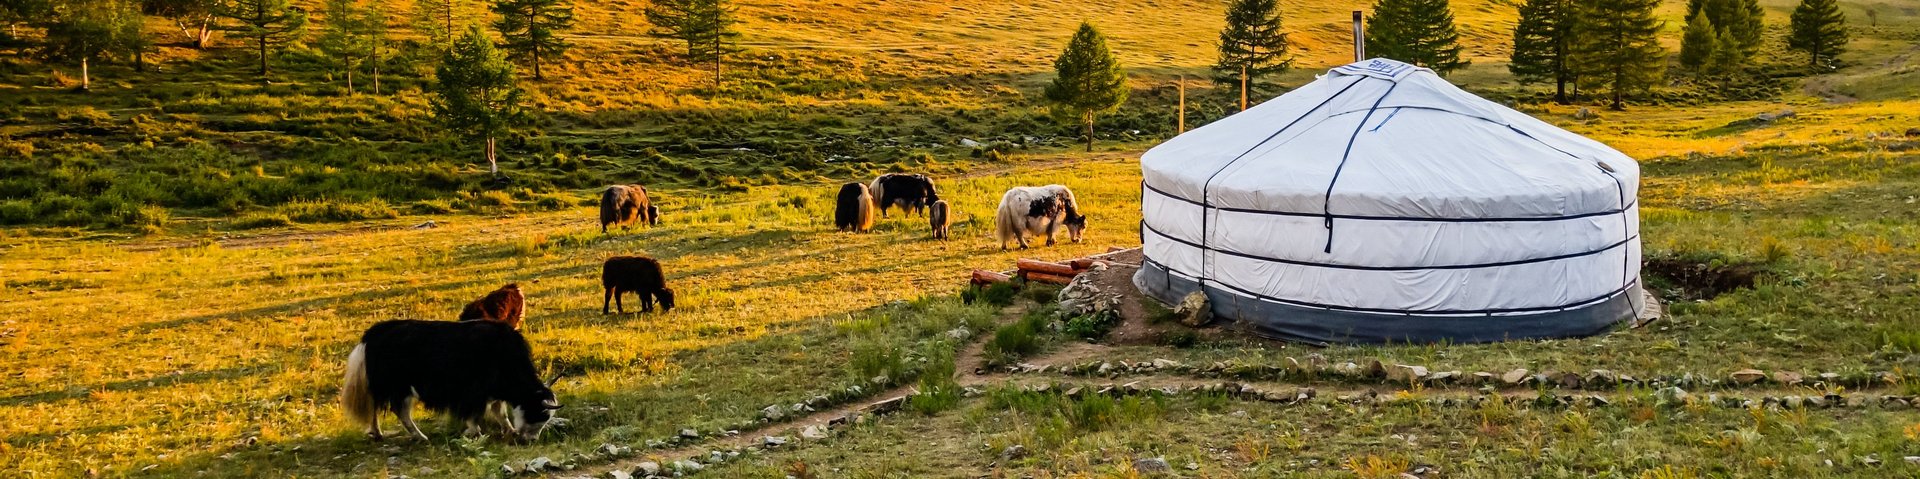 Jurten und Yaks in der Mongolei